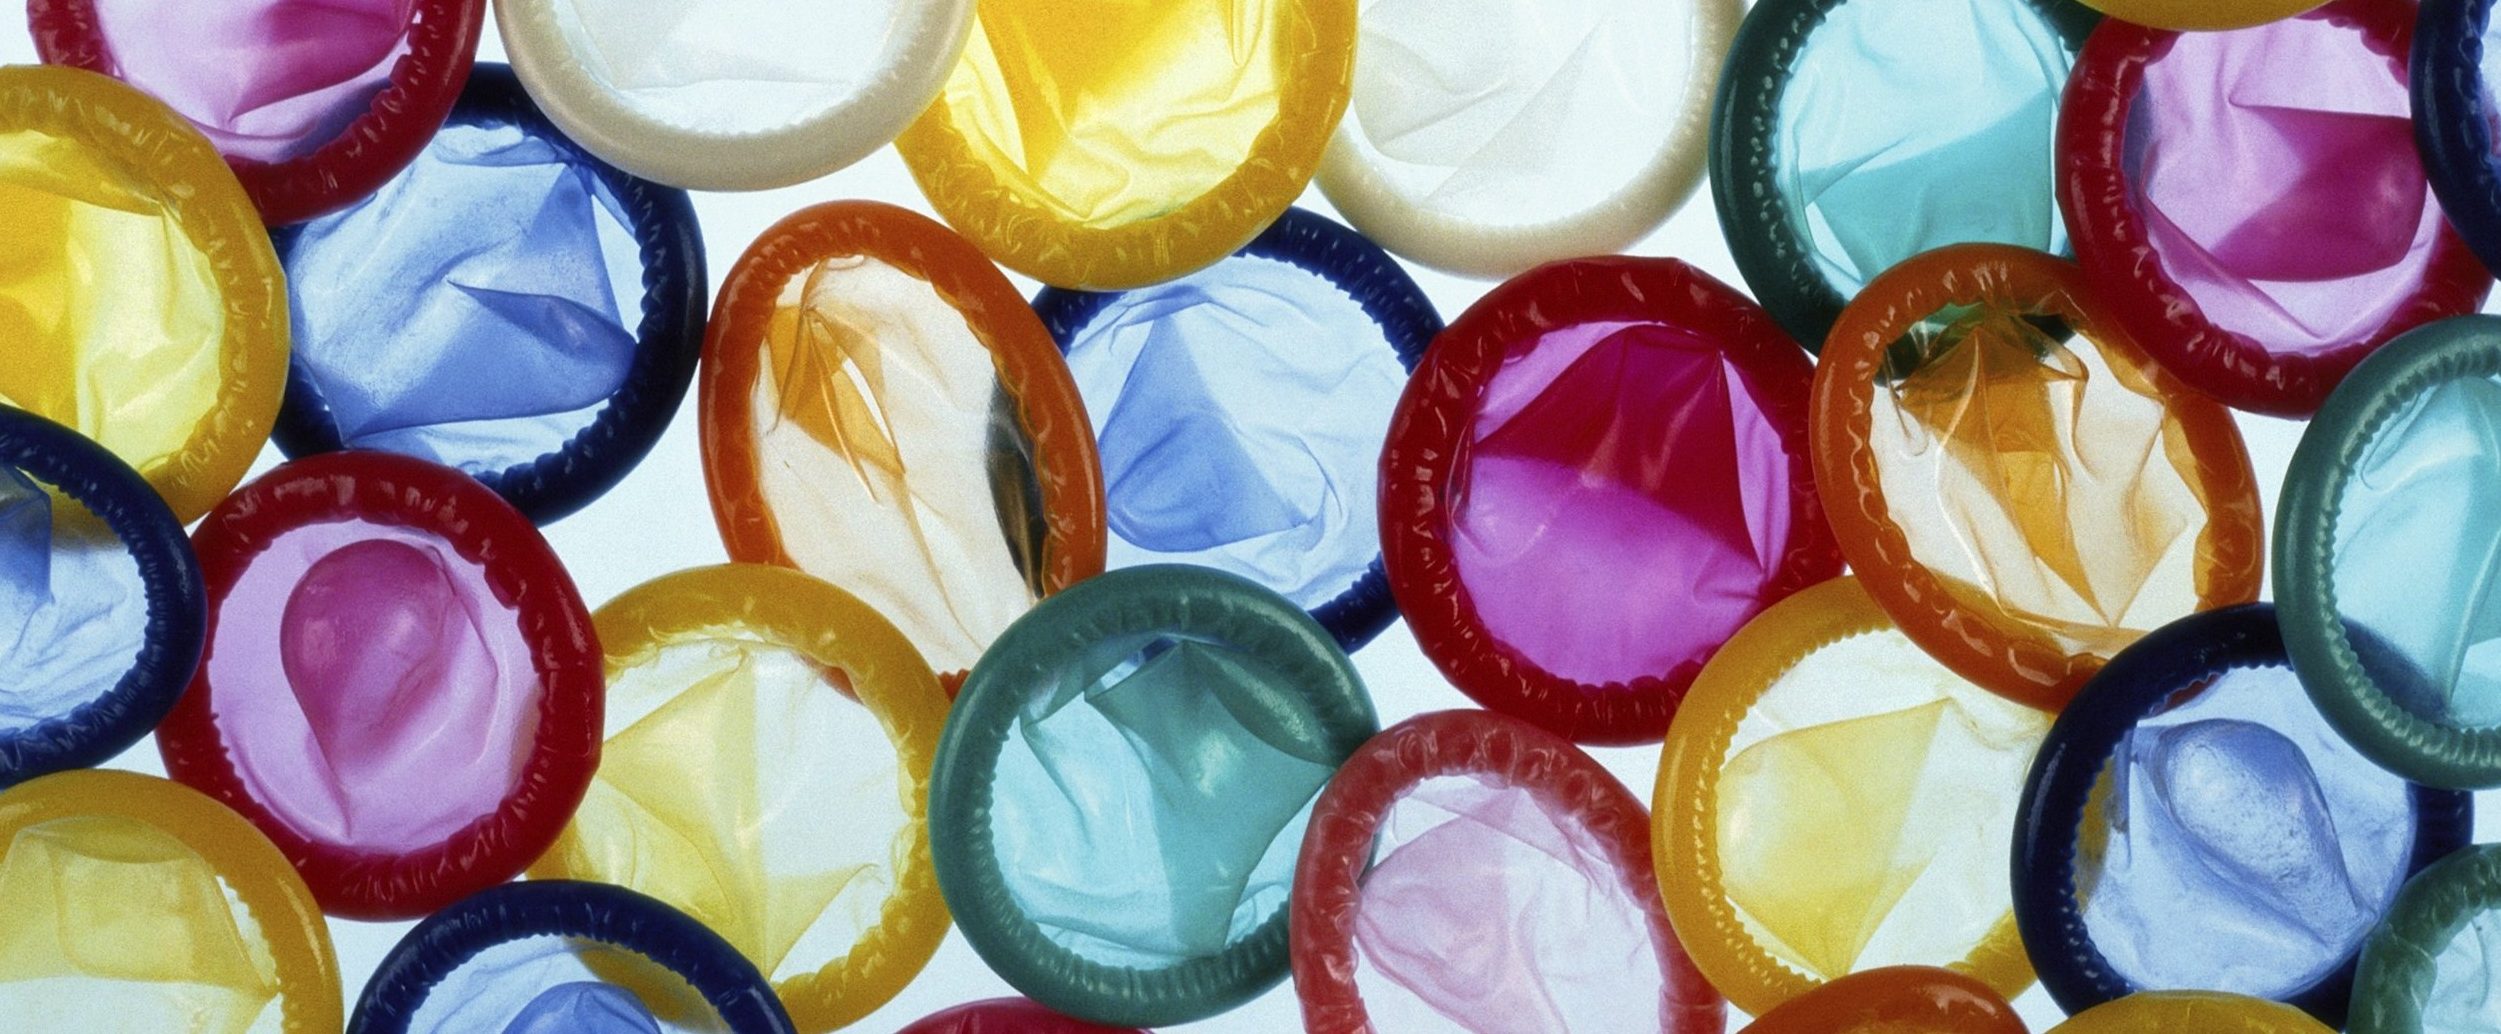 Mulai dari Bawang putih Sampai Rasa Nasi lemak, Inilah 7 Kondom dengan Rasa Unik!